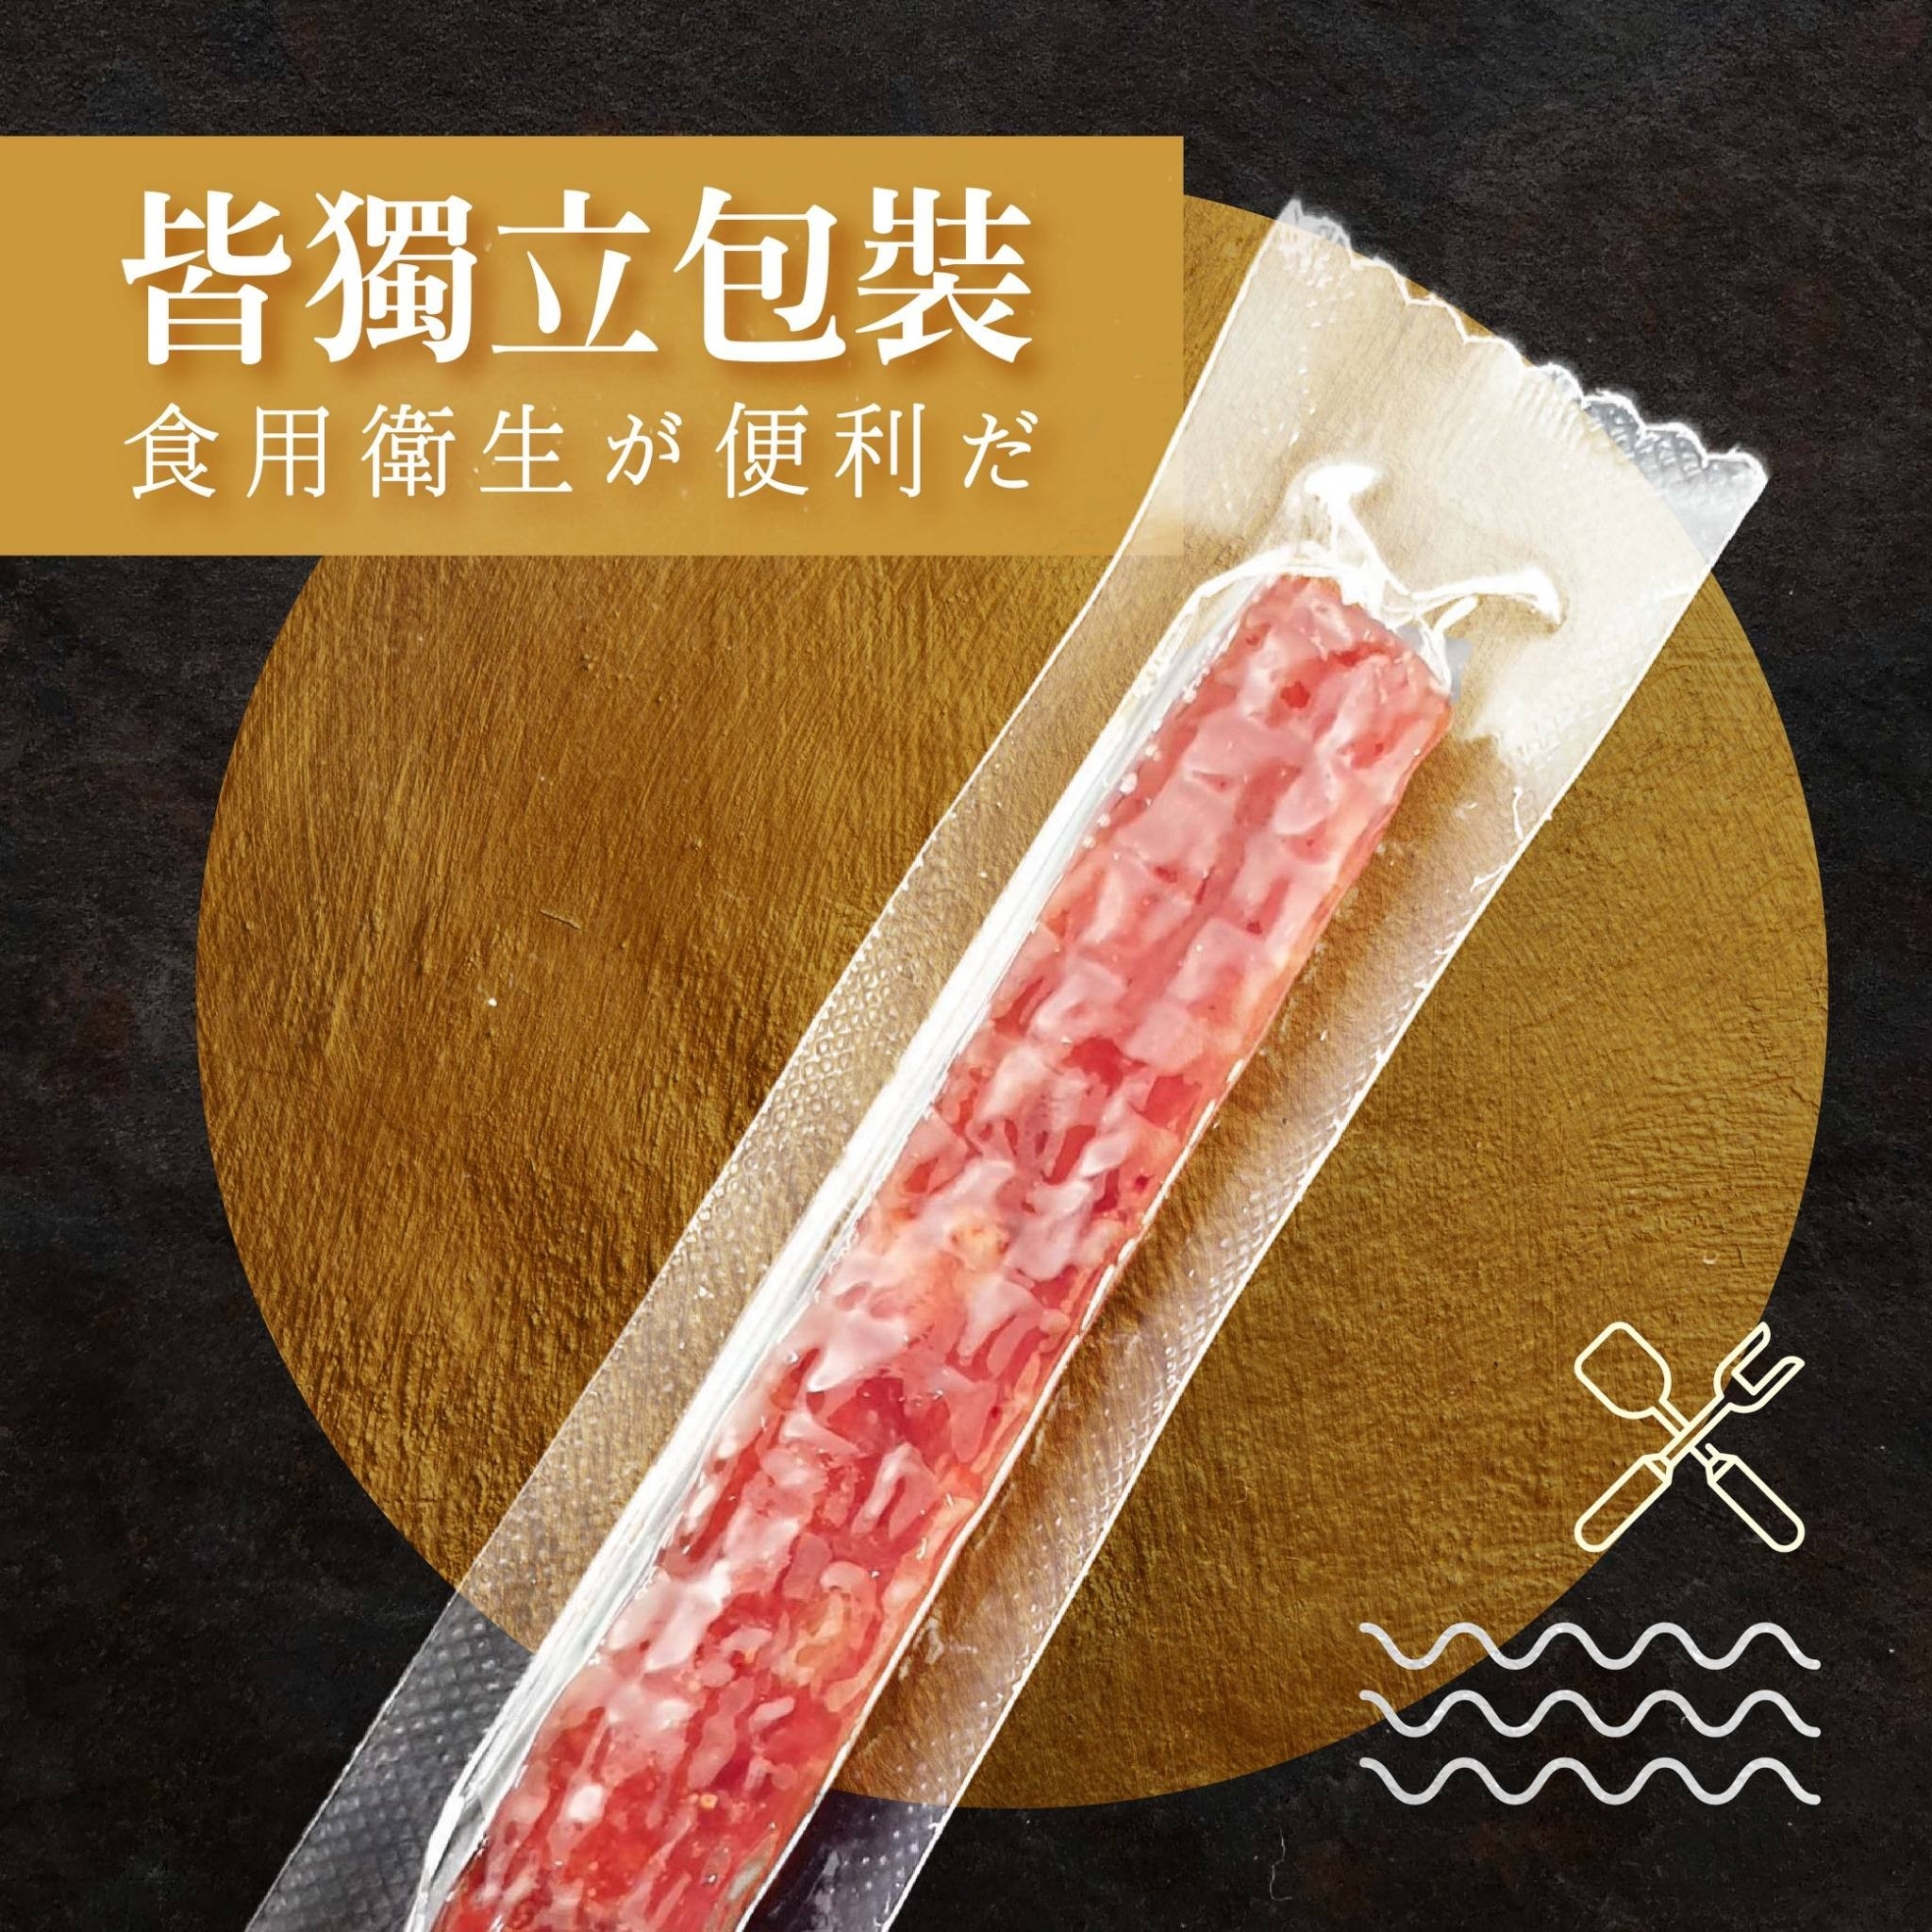 多汁鮮嫩蜜汁筷子豬肉條80g 真空獨立包裝